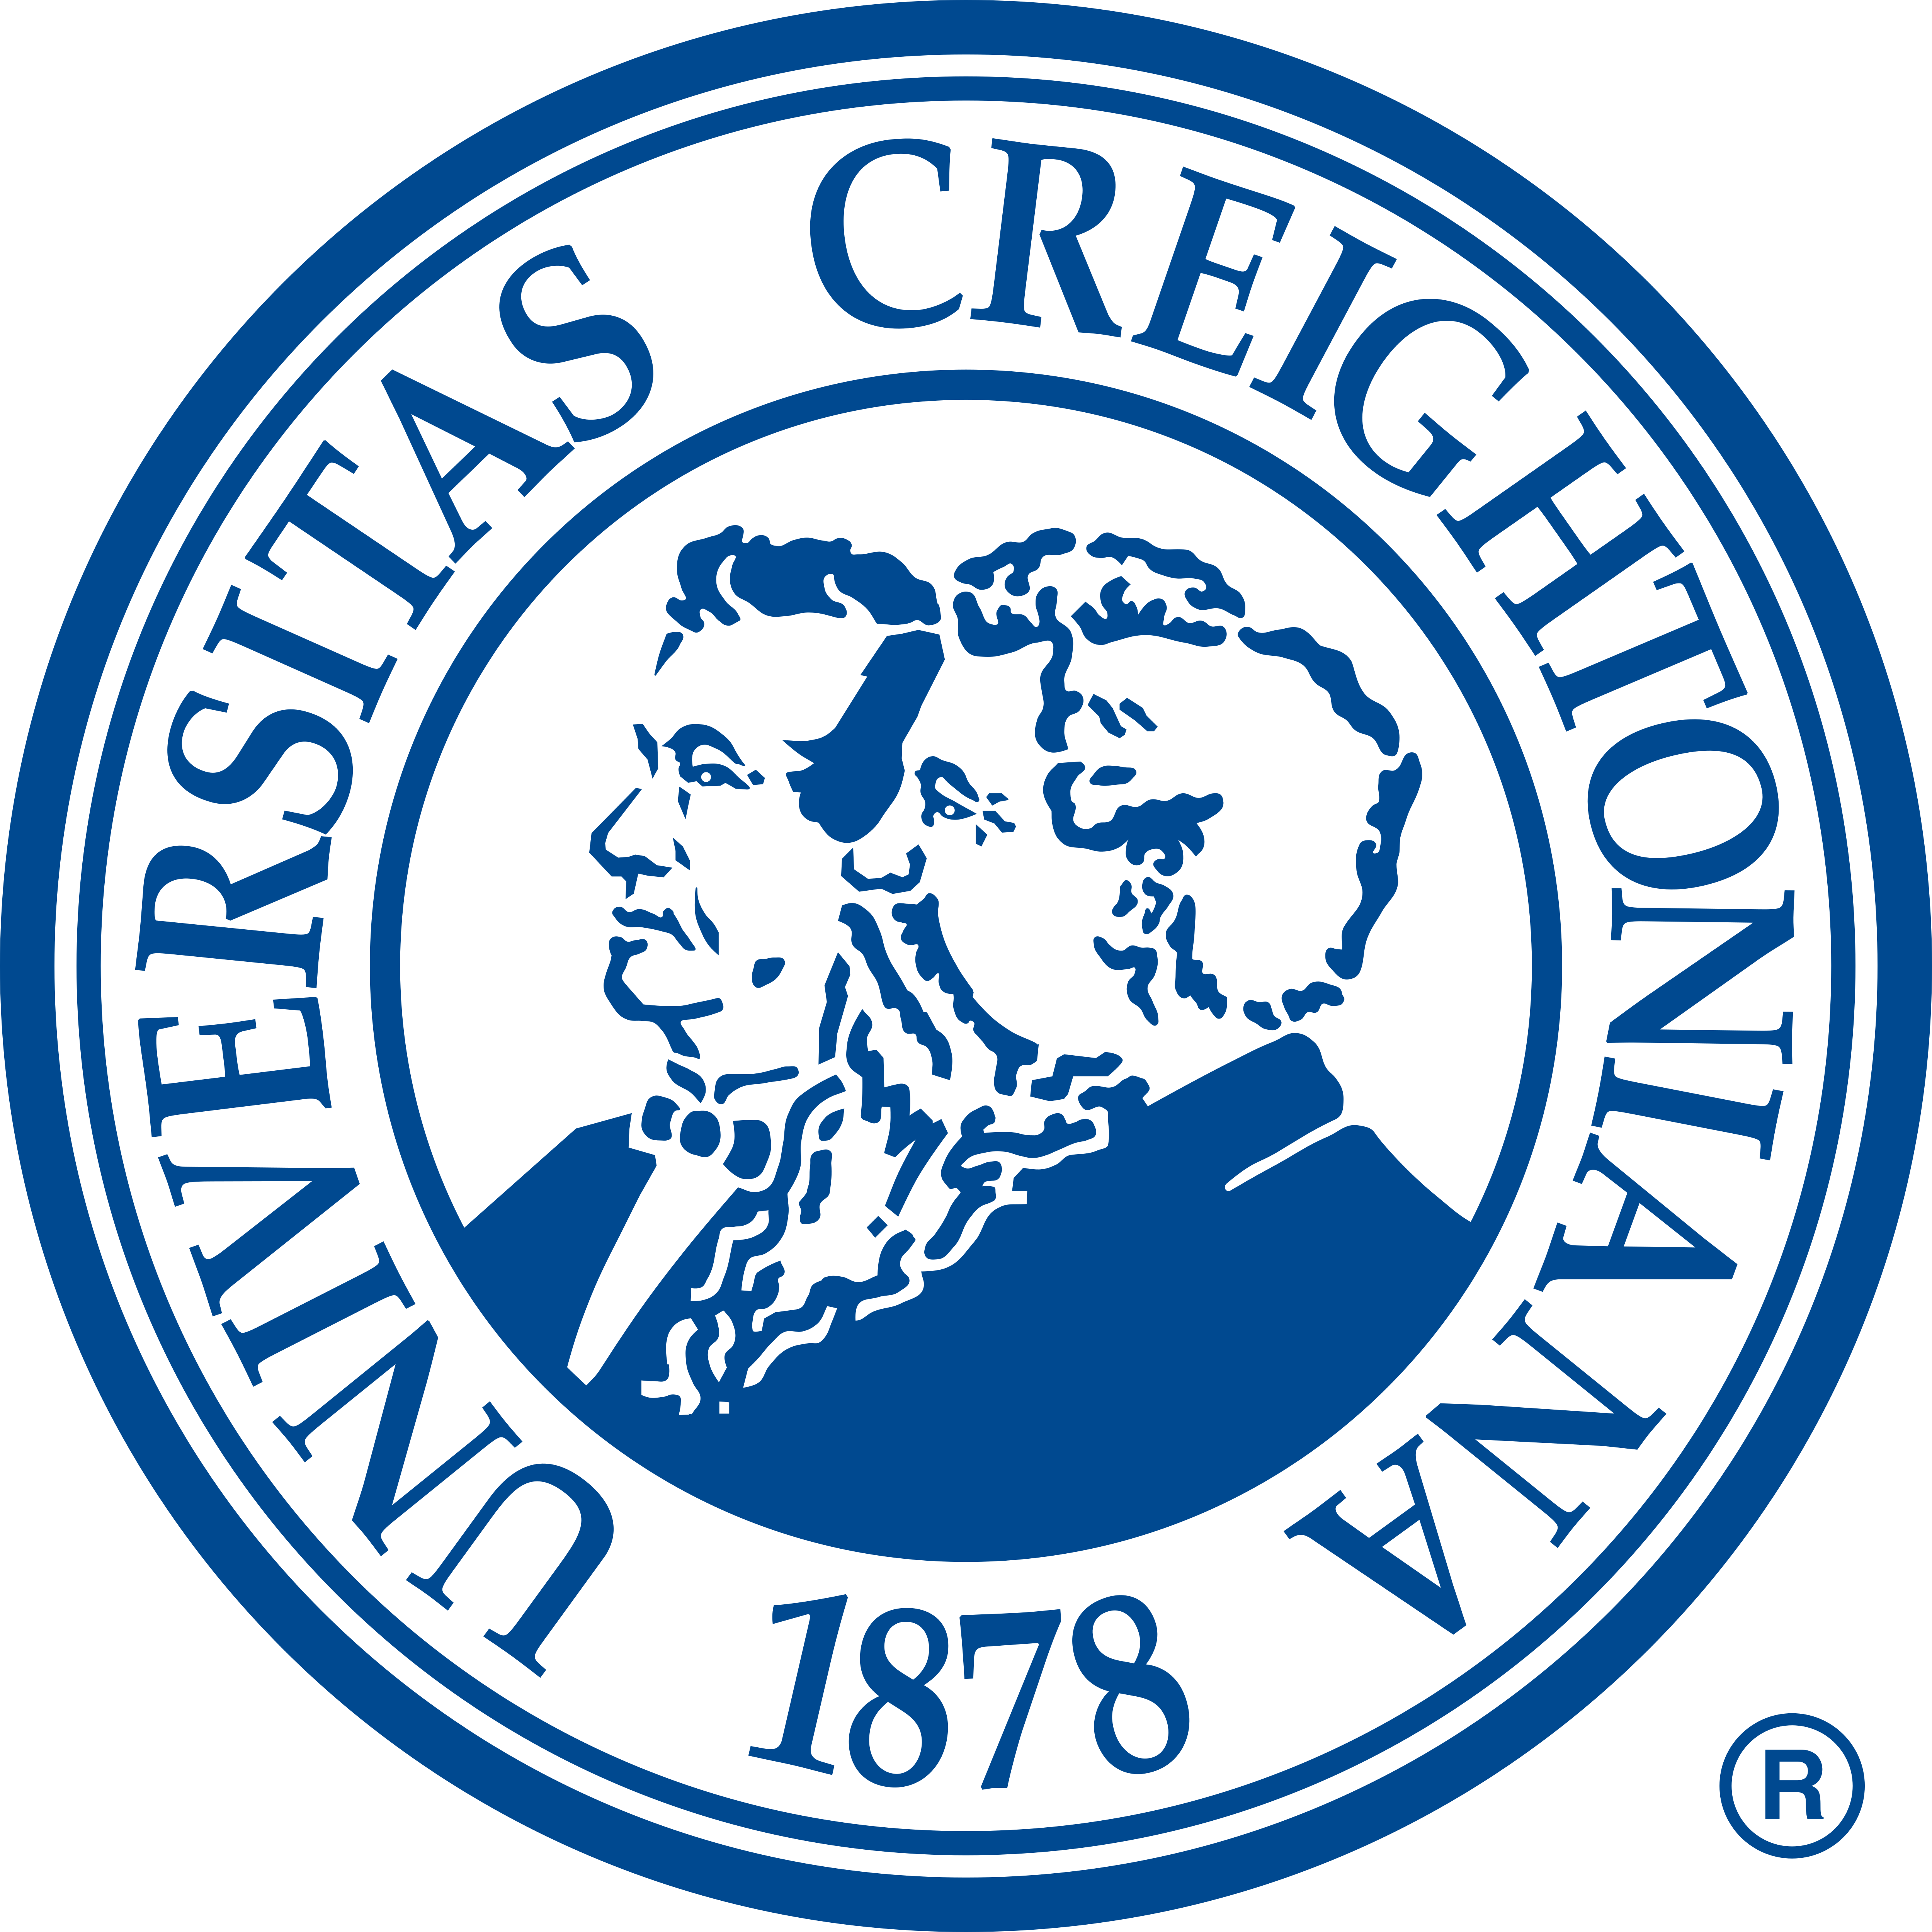 Creighton Logo | vlr.eng.br